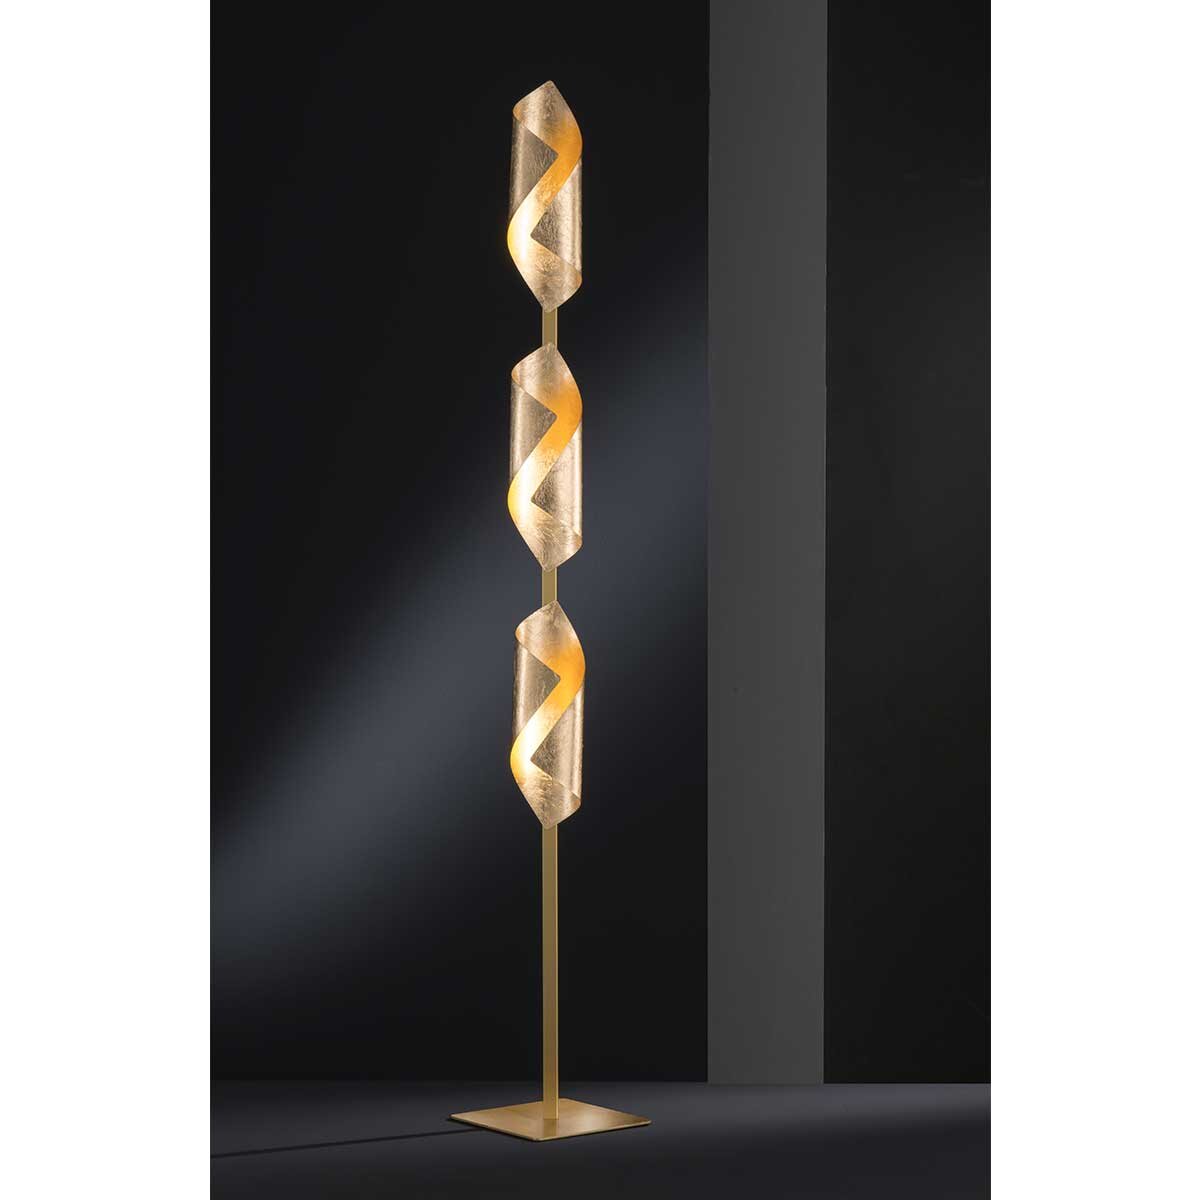 Designerlampe LED Stehlampe 18 Watt Golden Höhe 142cm Standlampe Standleuchte